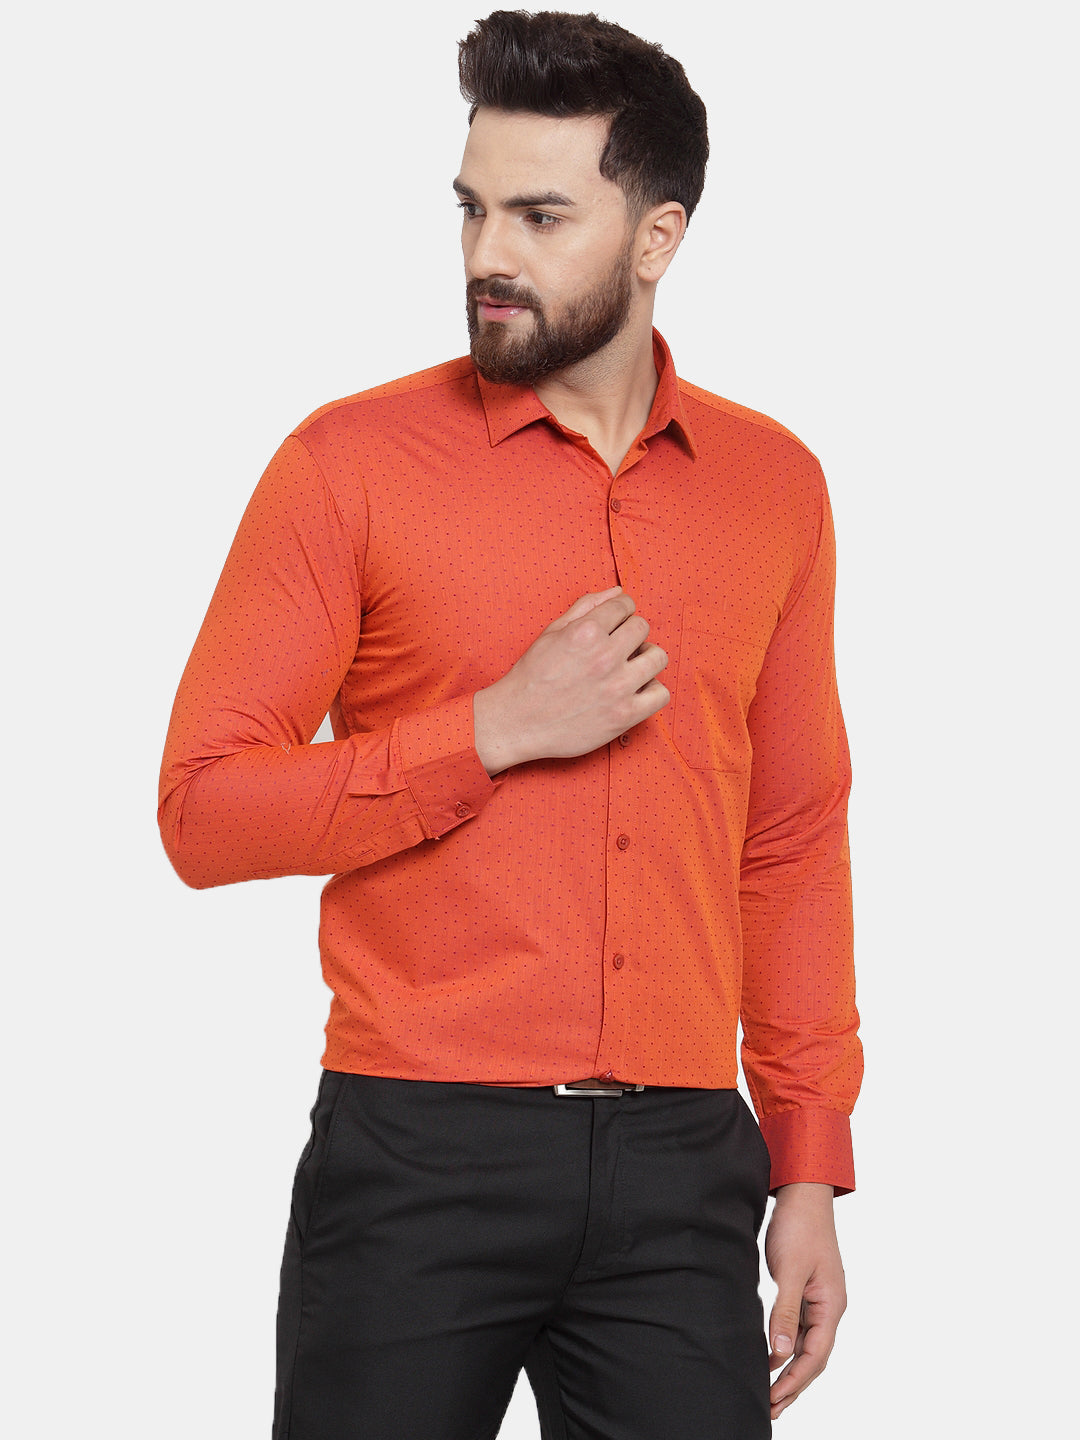 Men's Orange Cotton Polka Dots Formal Shirts ( SF 739Orange ) - Jainish